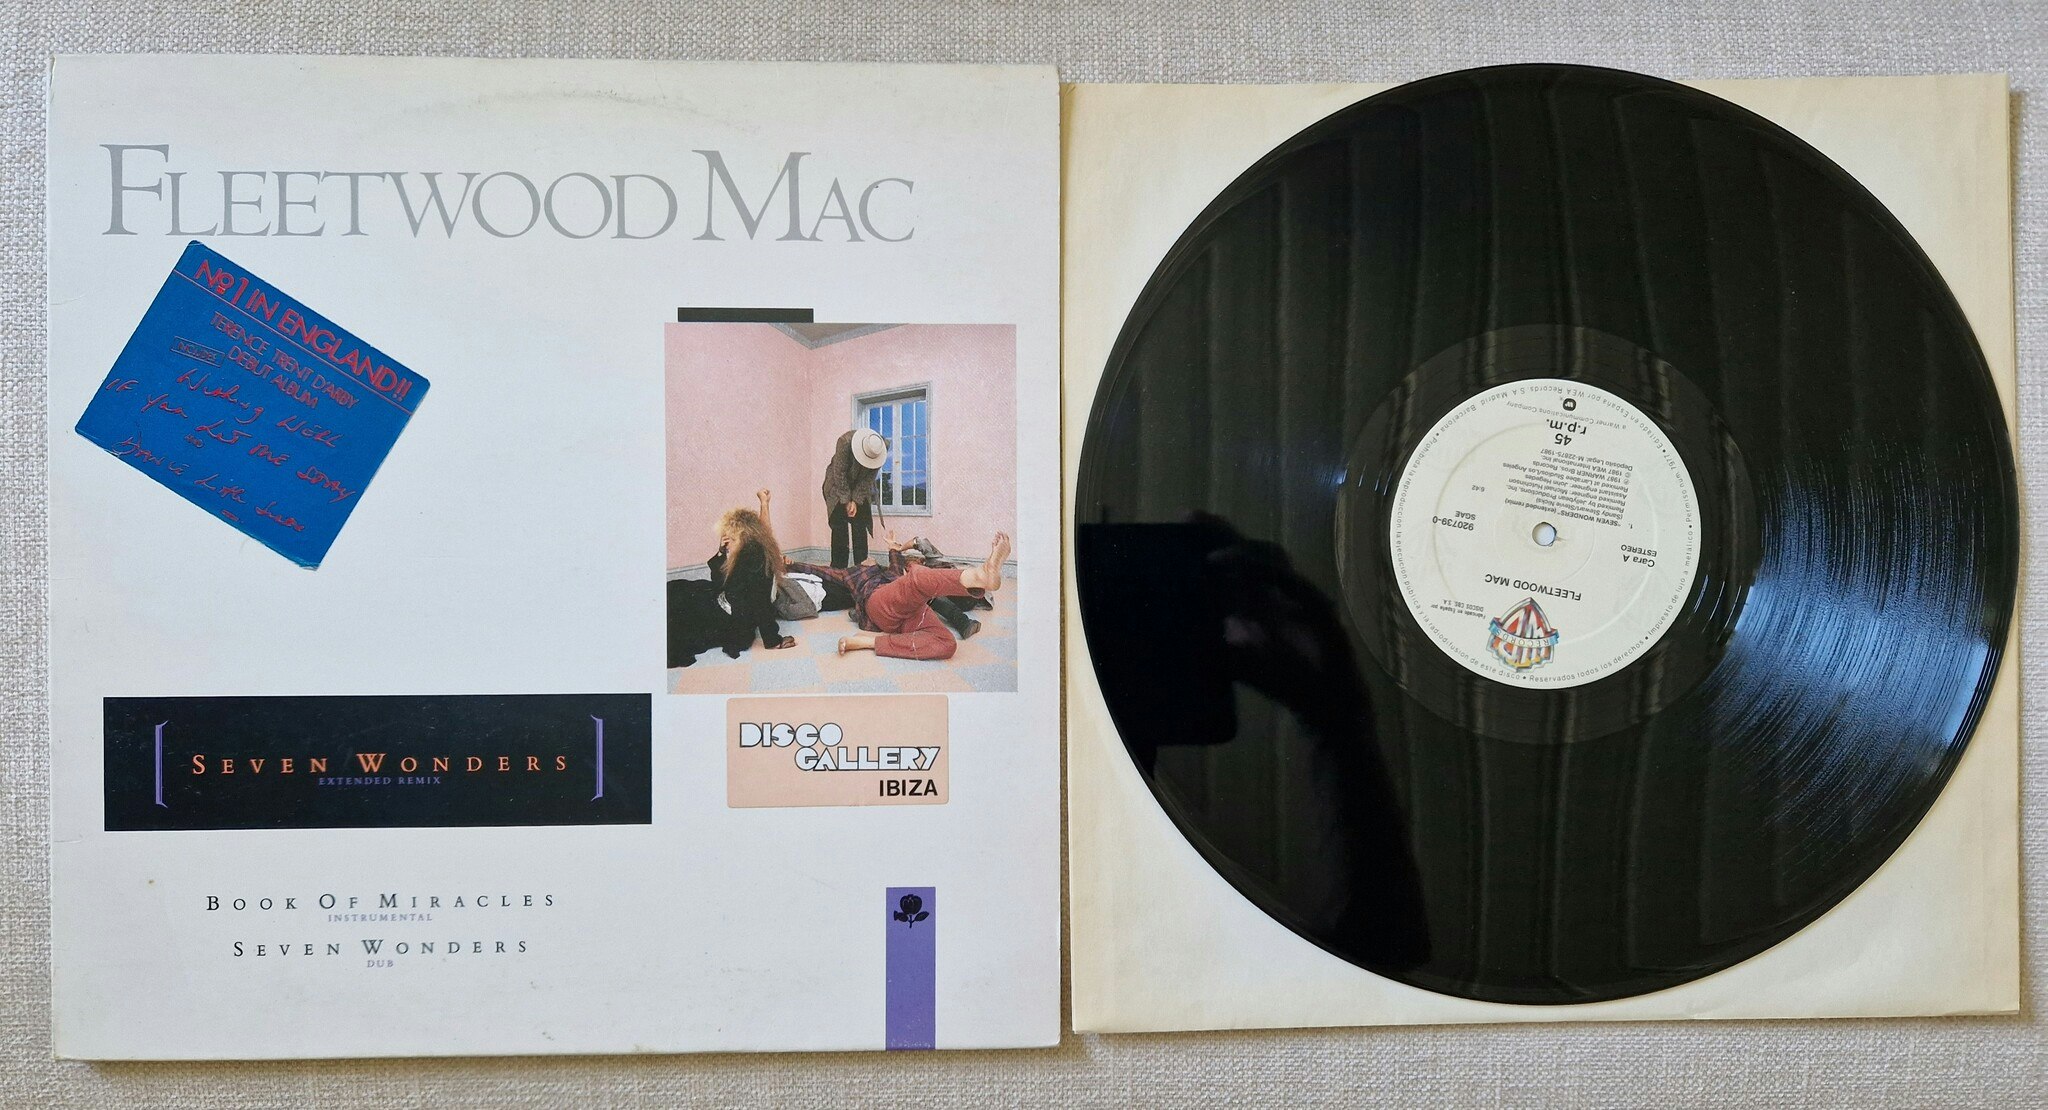 Fleetwood Mac, Seven wonders. Vinyl S 12"